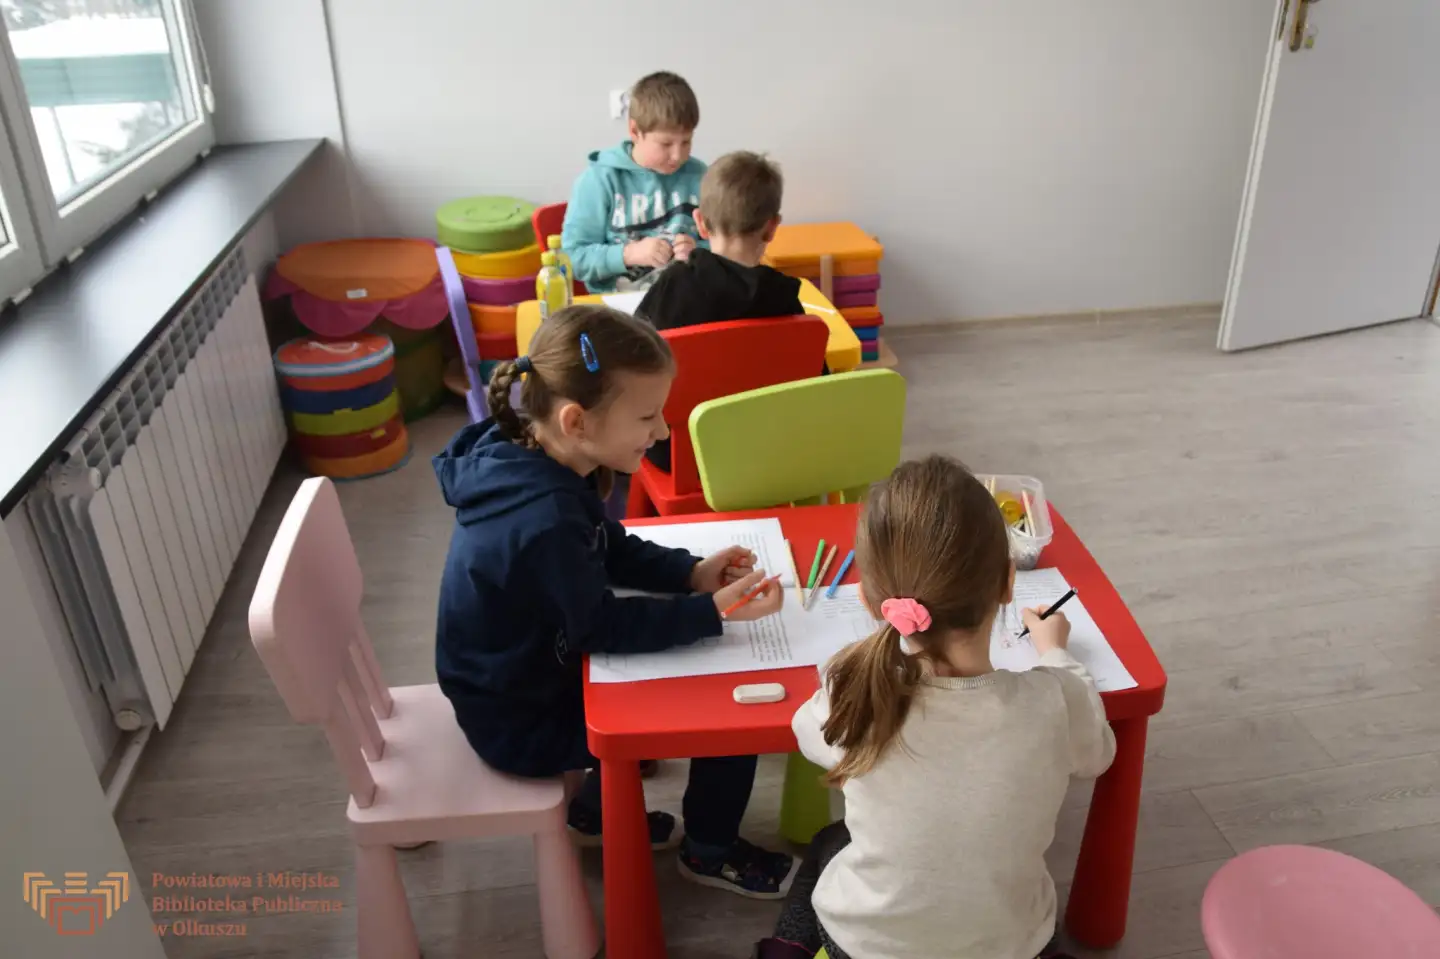 Zdjęcie zostało zrobione w sali edukacyjnej Biblioteki. Przedstawia czwórkę dzieci, które siedzą przy stoliczkach i wypełniają zadania.